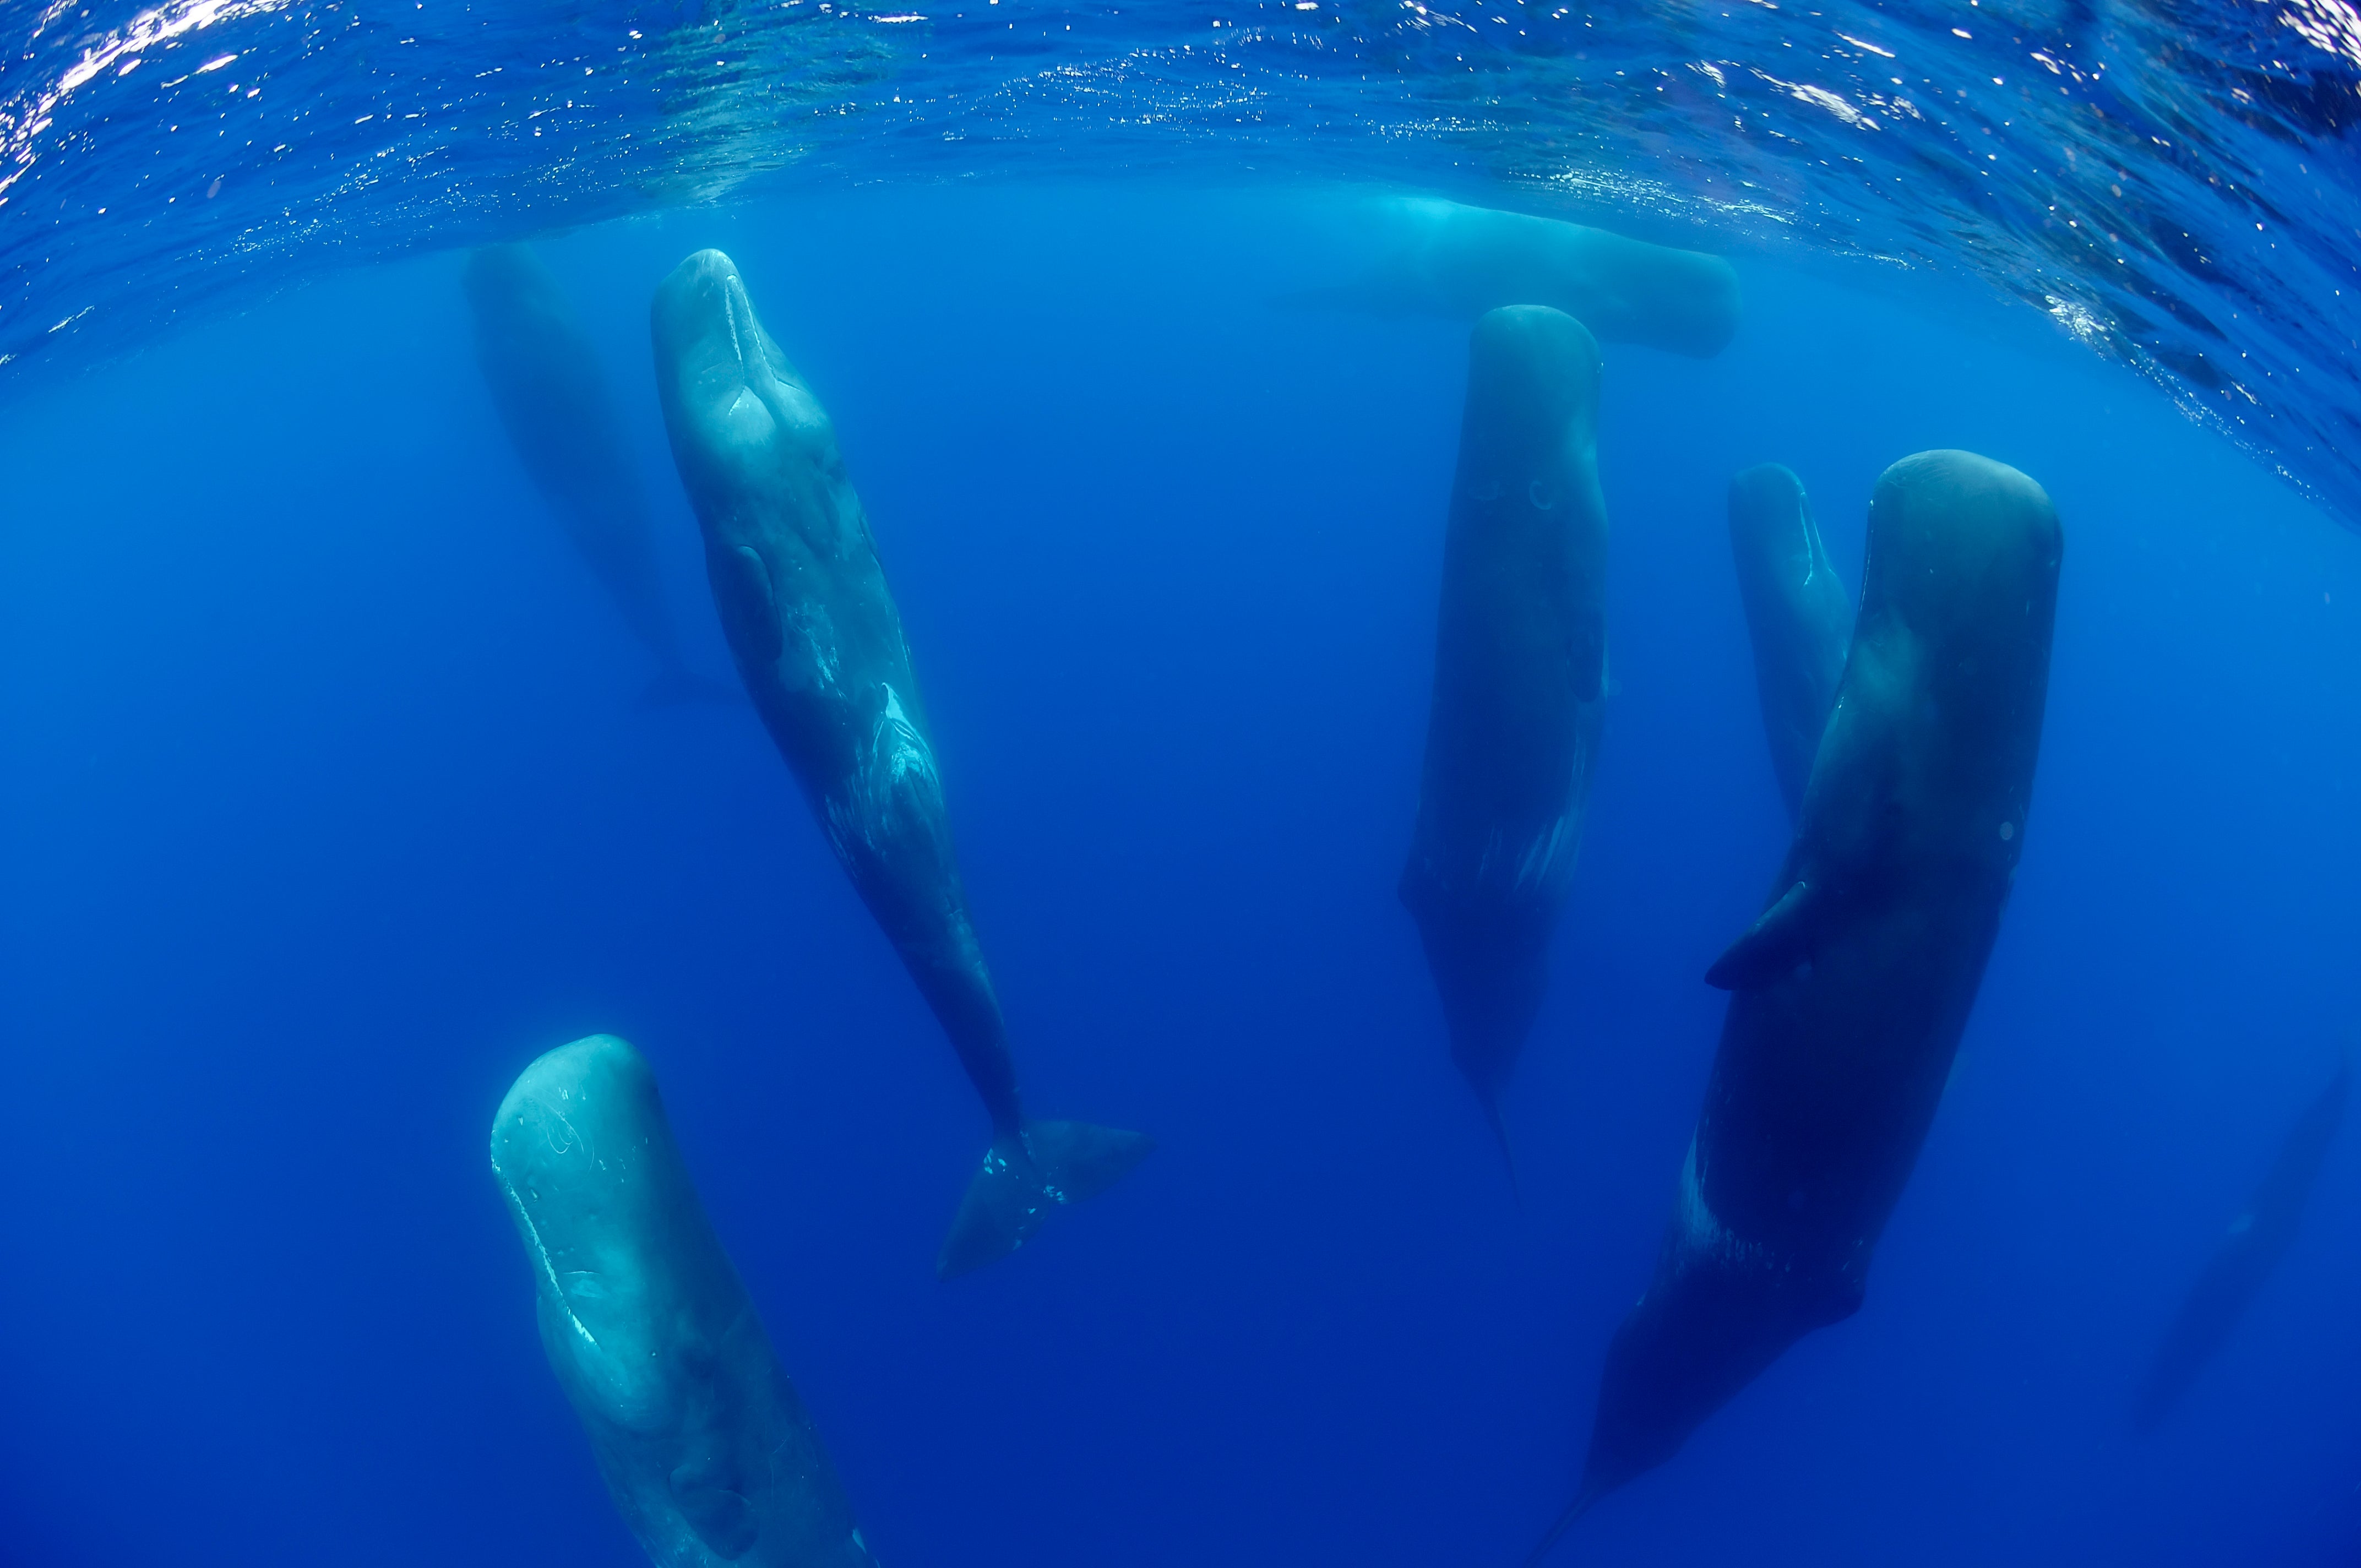 Social unit of male sperm whales